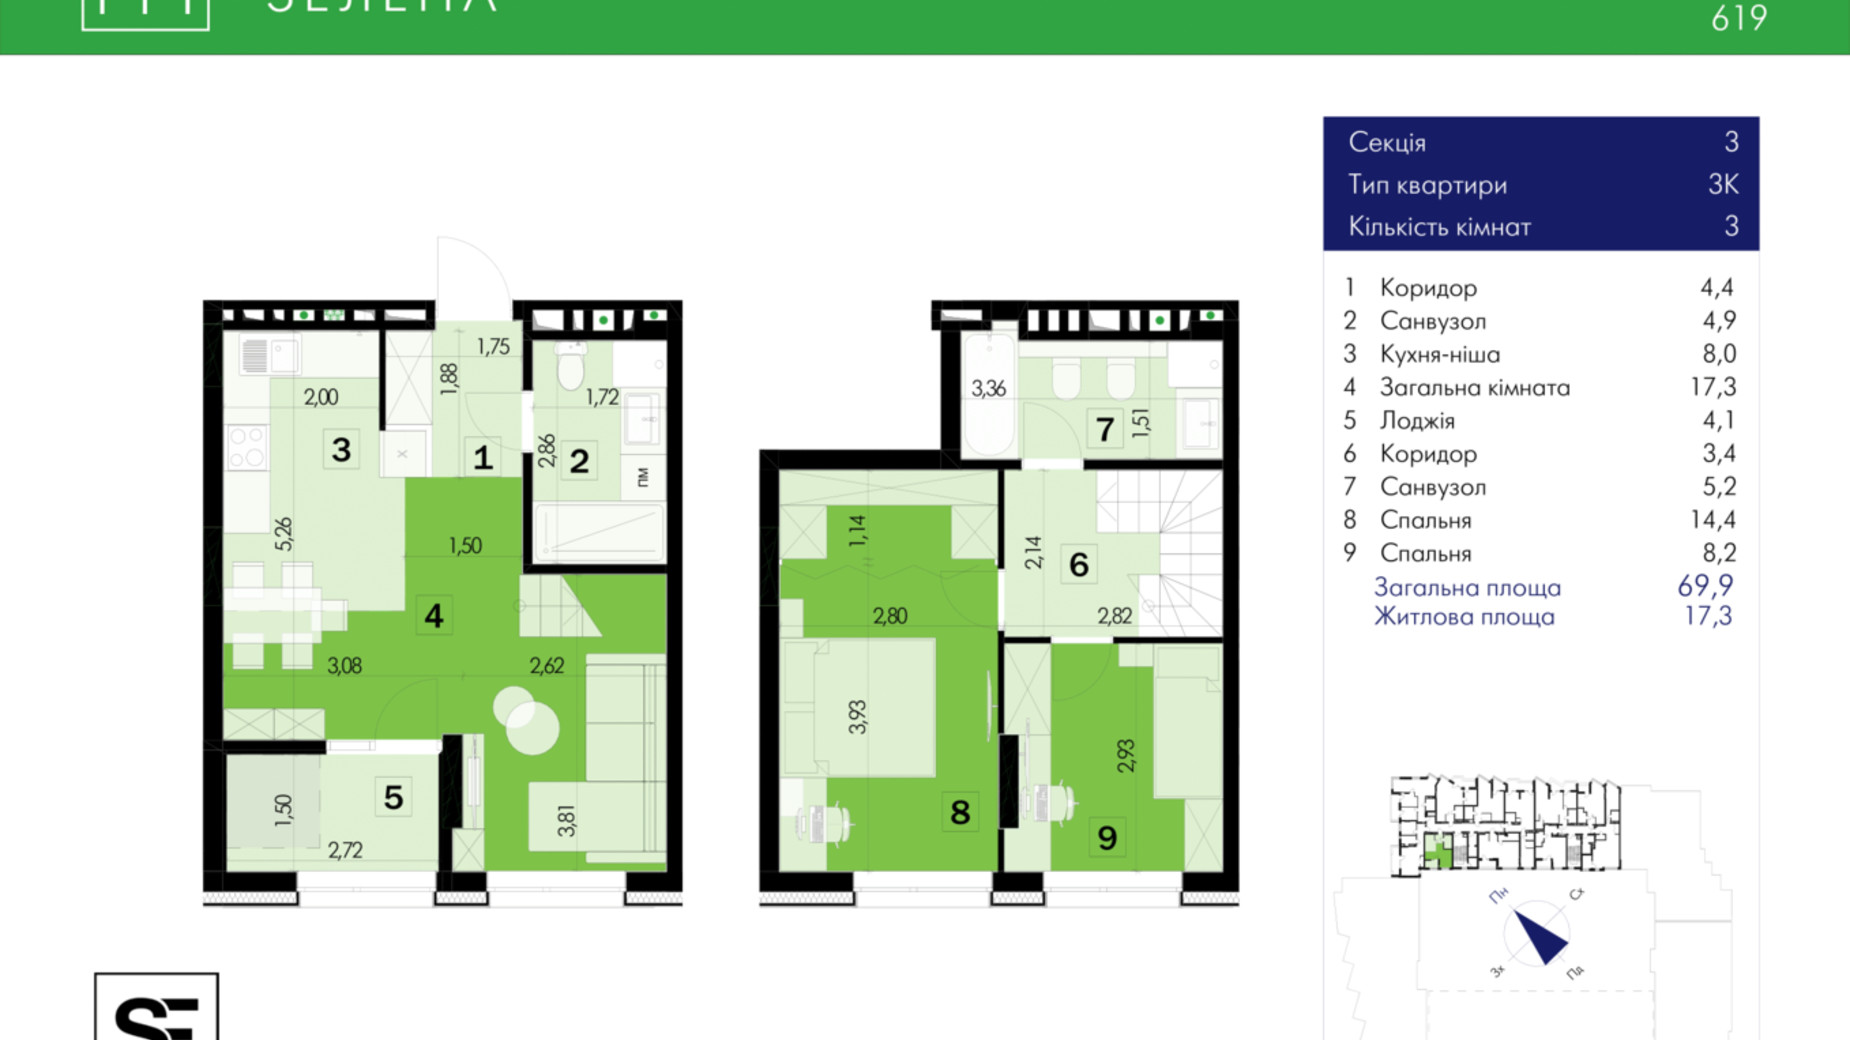 Планування багато­рівневої квартири в ЖК 111 Зелена 69.9 м², фото 634041